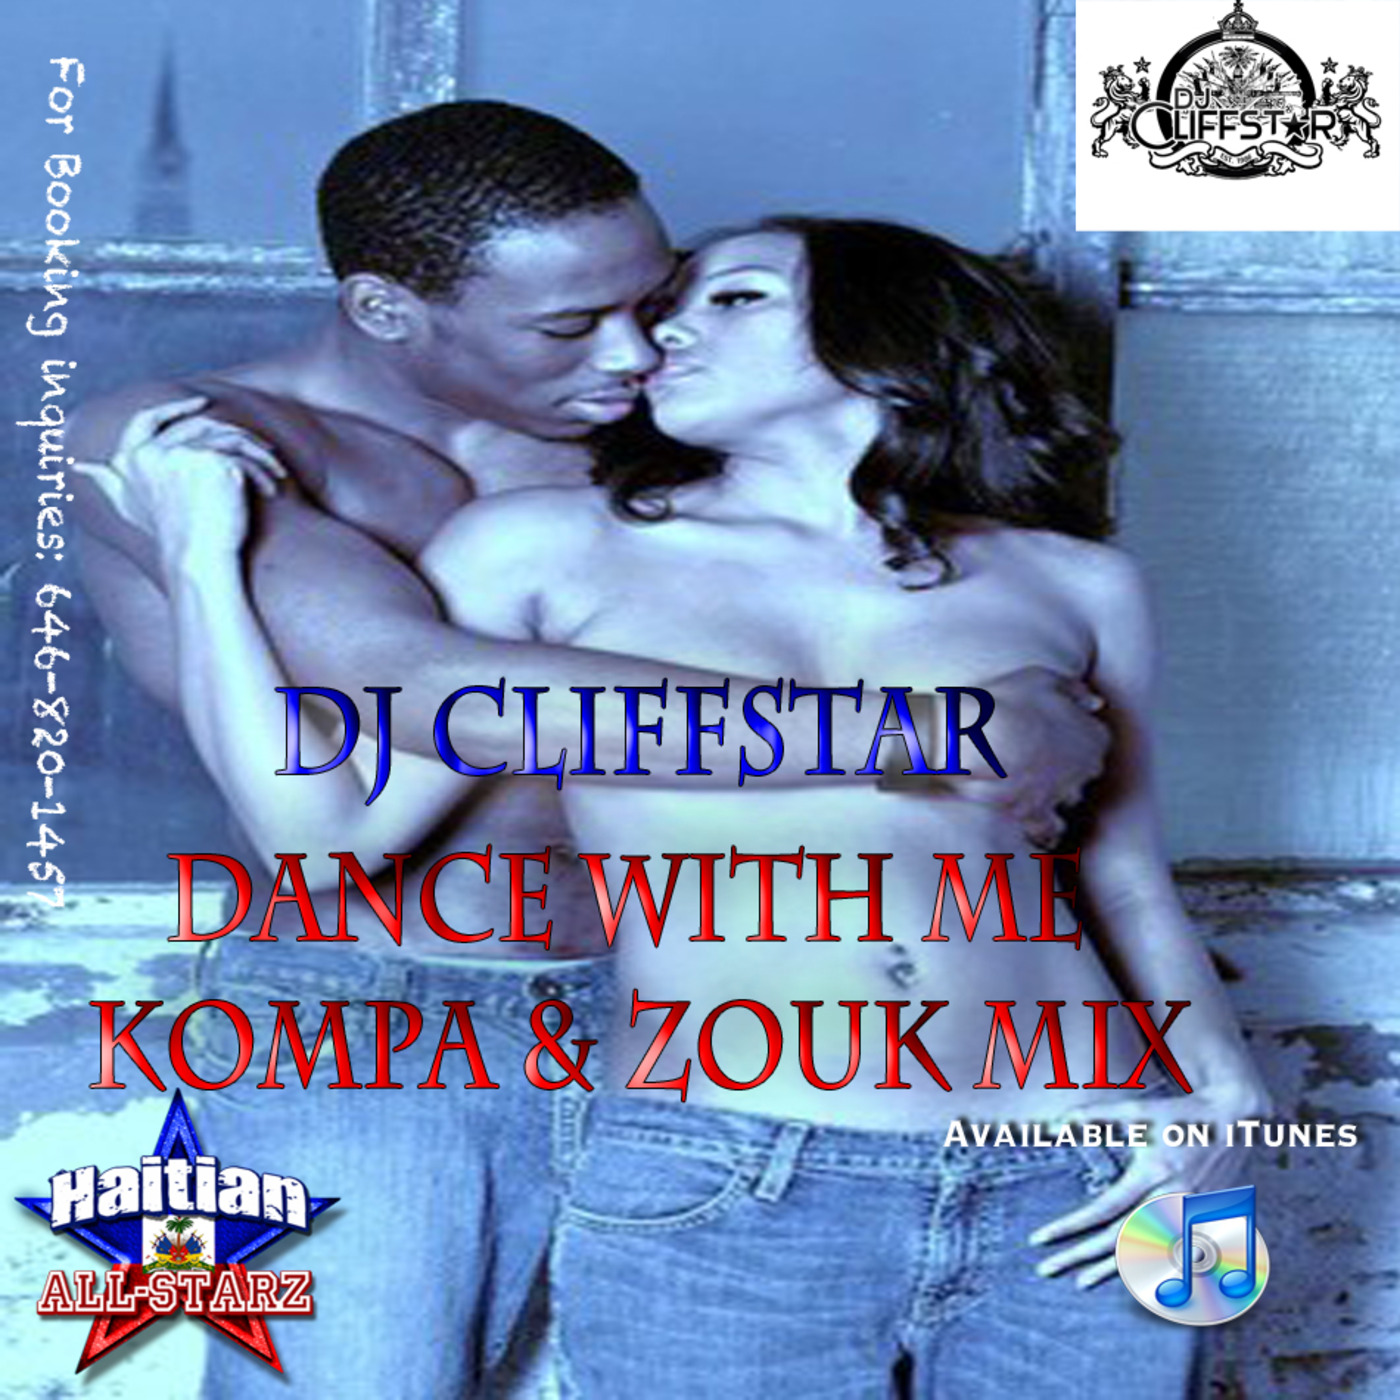 Dance With Me Kompa & Zouk Mix - DJ Cliffstar {Haitian All-StarZ DJs}